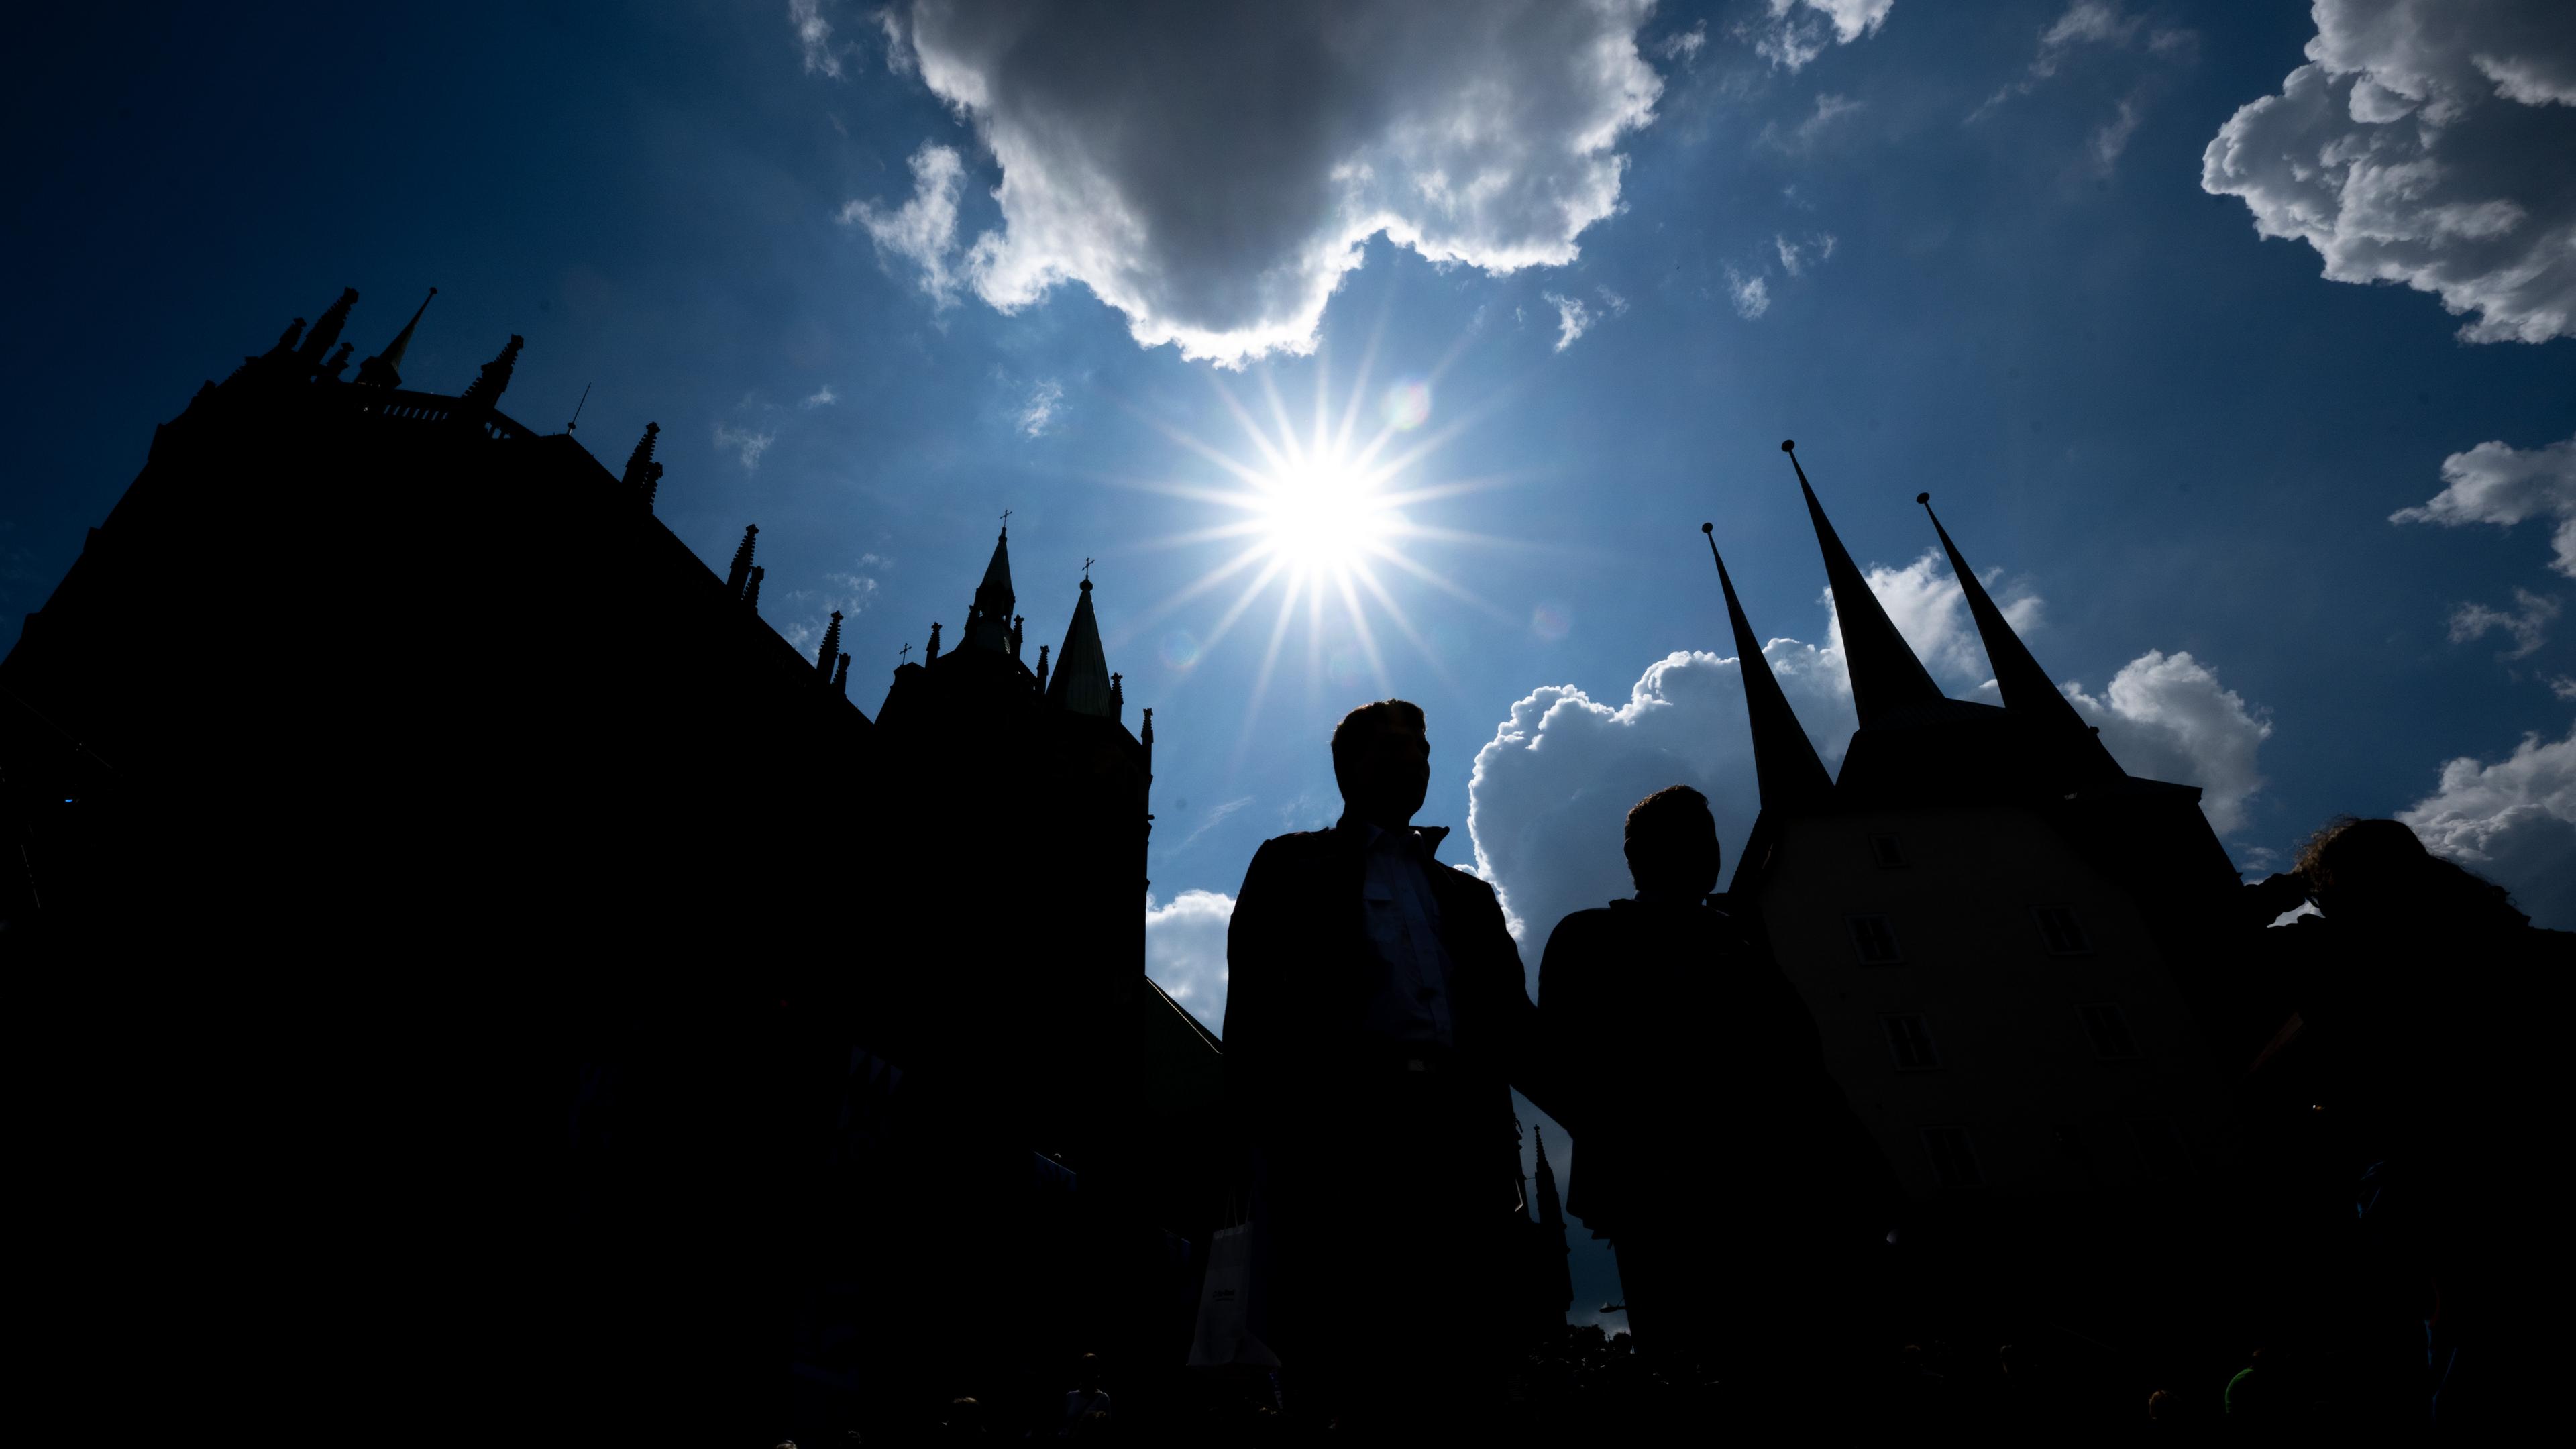 Besucher des Deutschen Katholikentages sind im Gegenlicht der Sonne vor der Silhouette des Doms zu sehen.